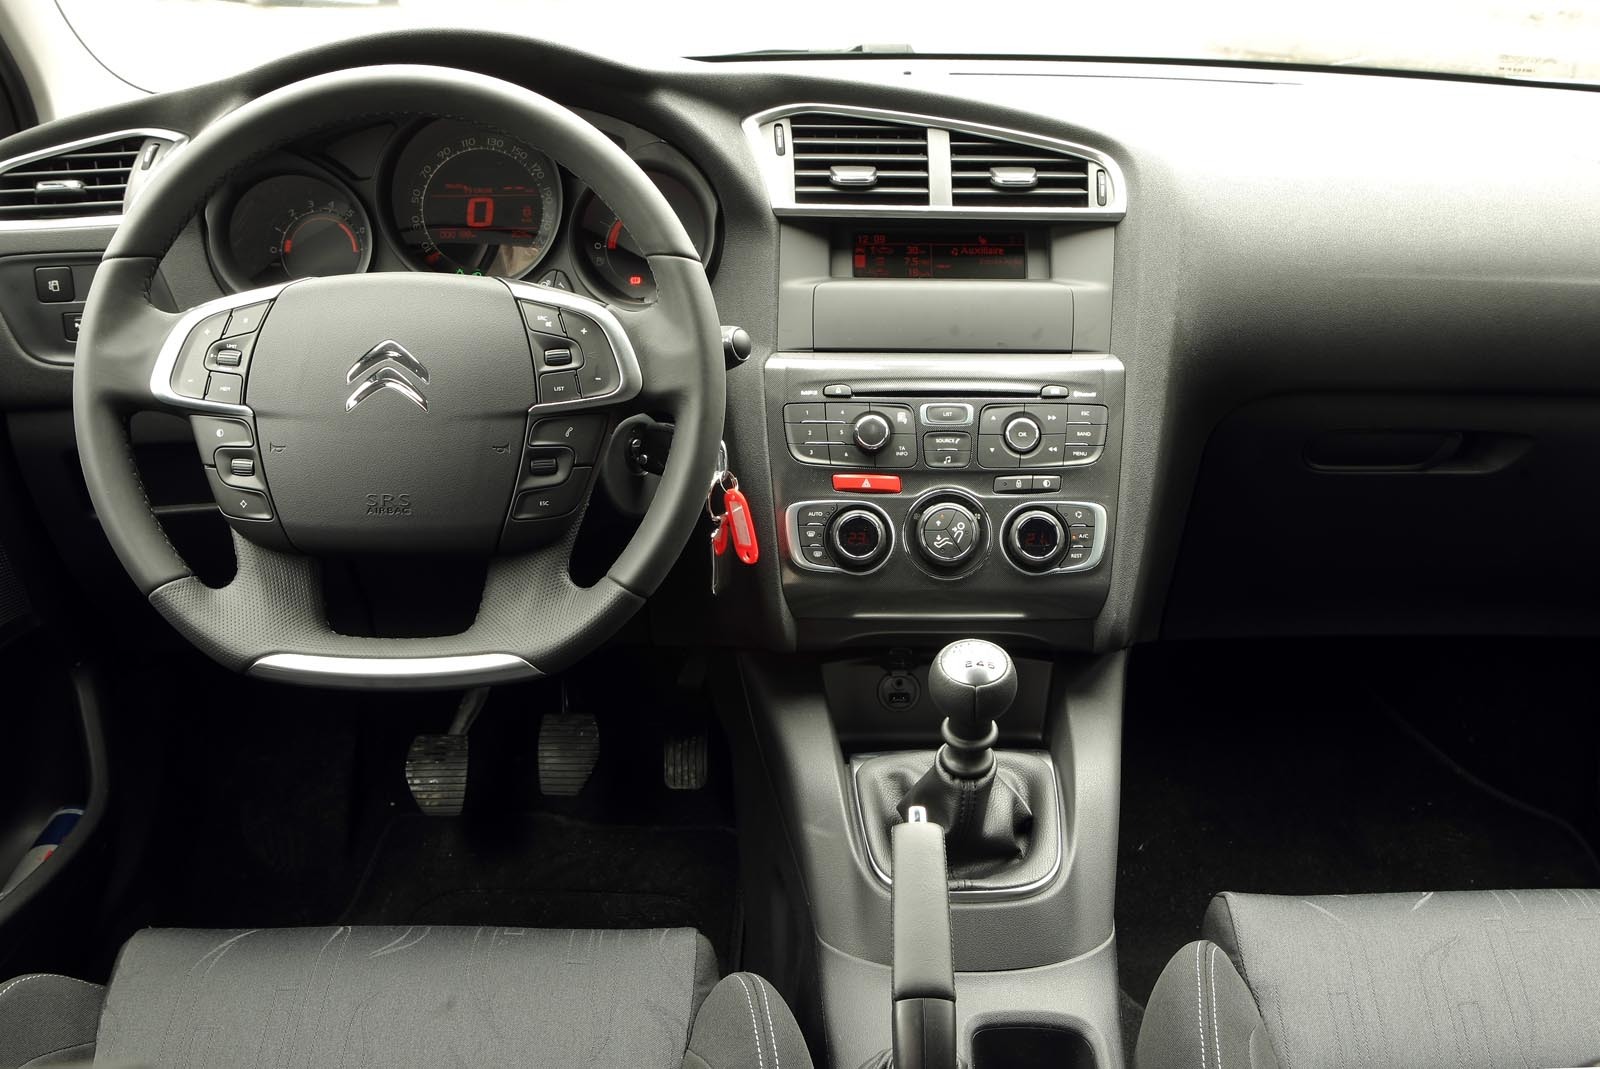 Interiorul noului Citroen C4 are un stil placut, sobru si sofisticat, dar si ergonomic